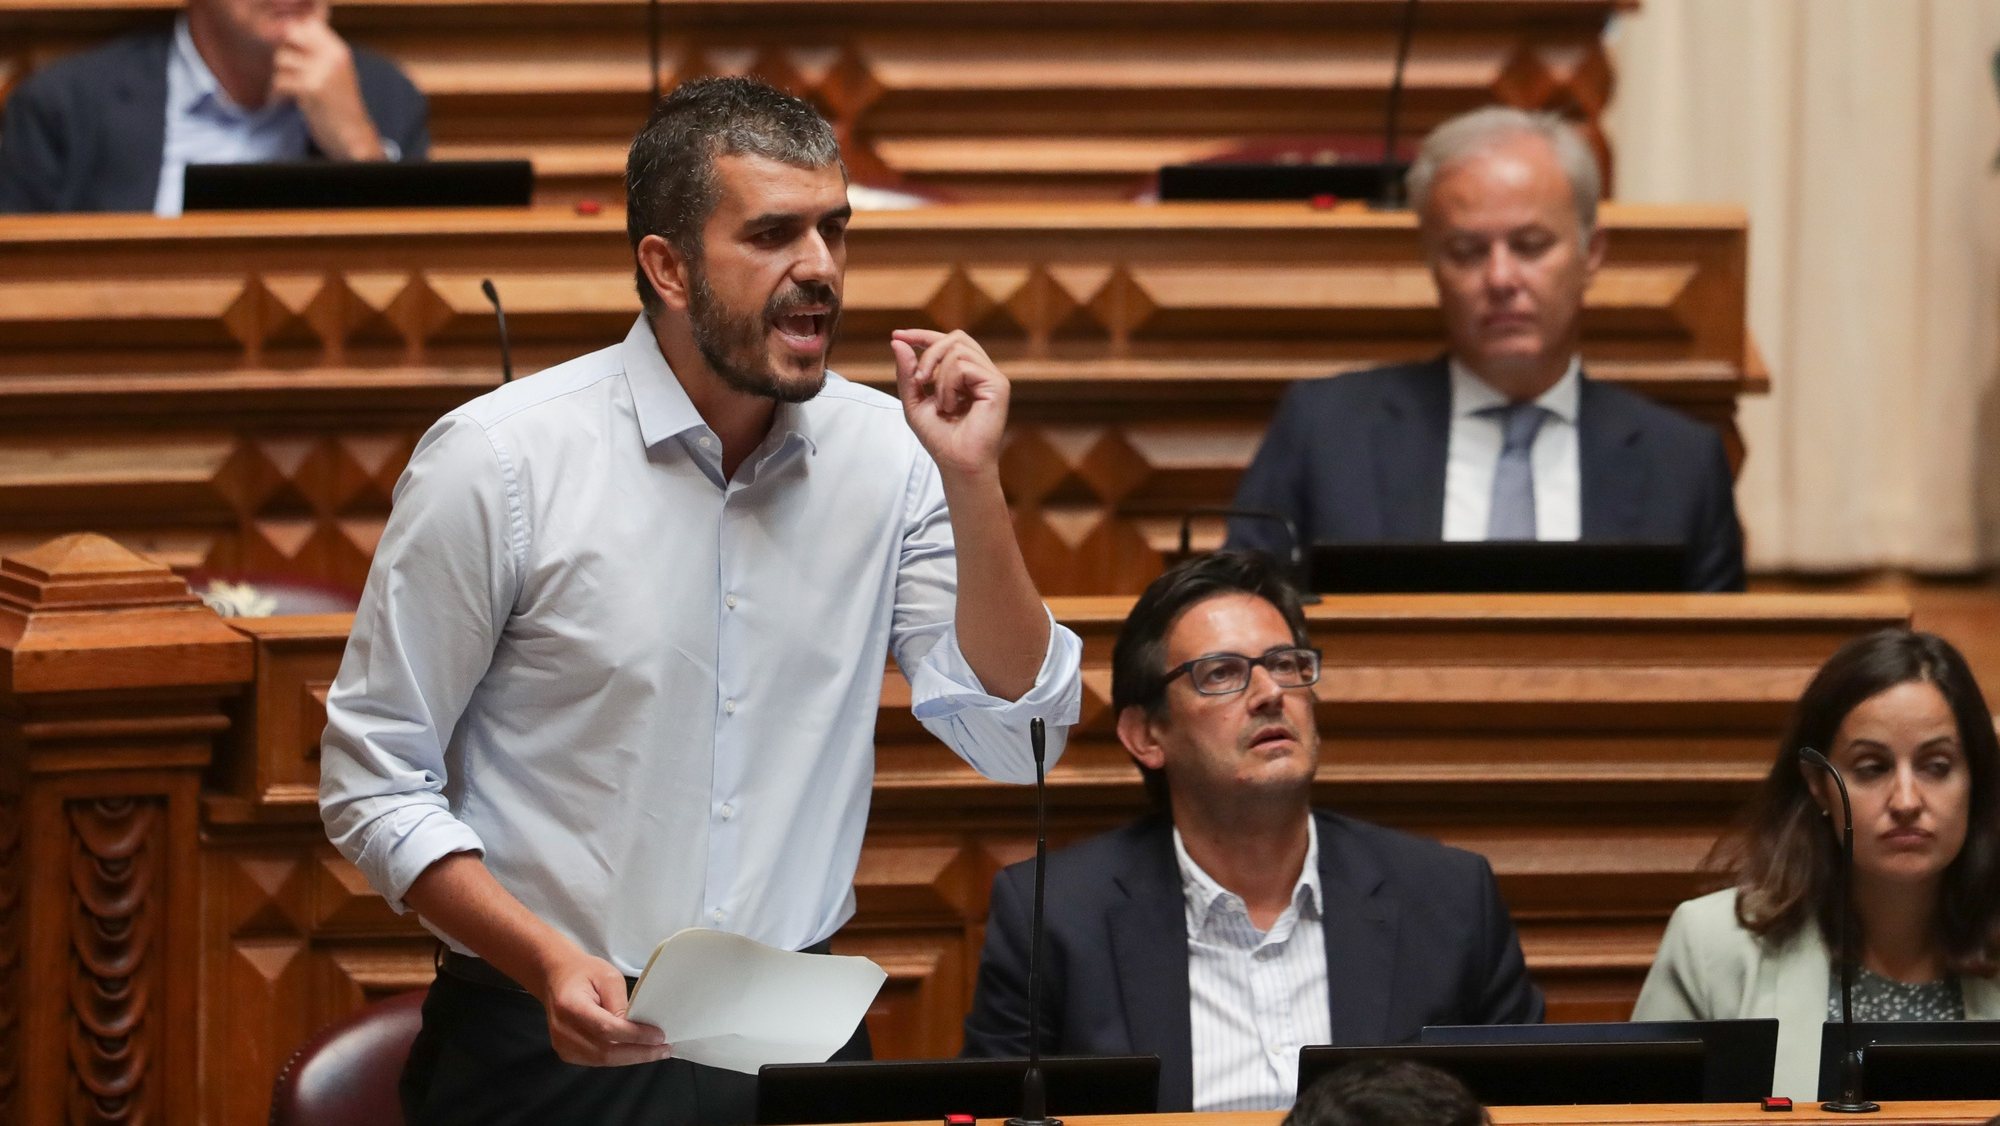 O deputado do Iniciativa Liberal (IL) Carlos Manuel Pinto, intervém durante o debate parlamentar na Assembleia da República, em Lisboa, 16 de setembro de 2022. TIAGO PETINGA/LUSA